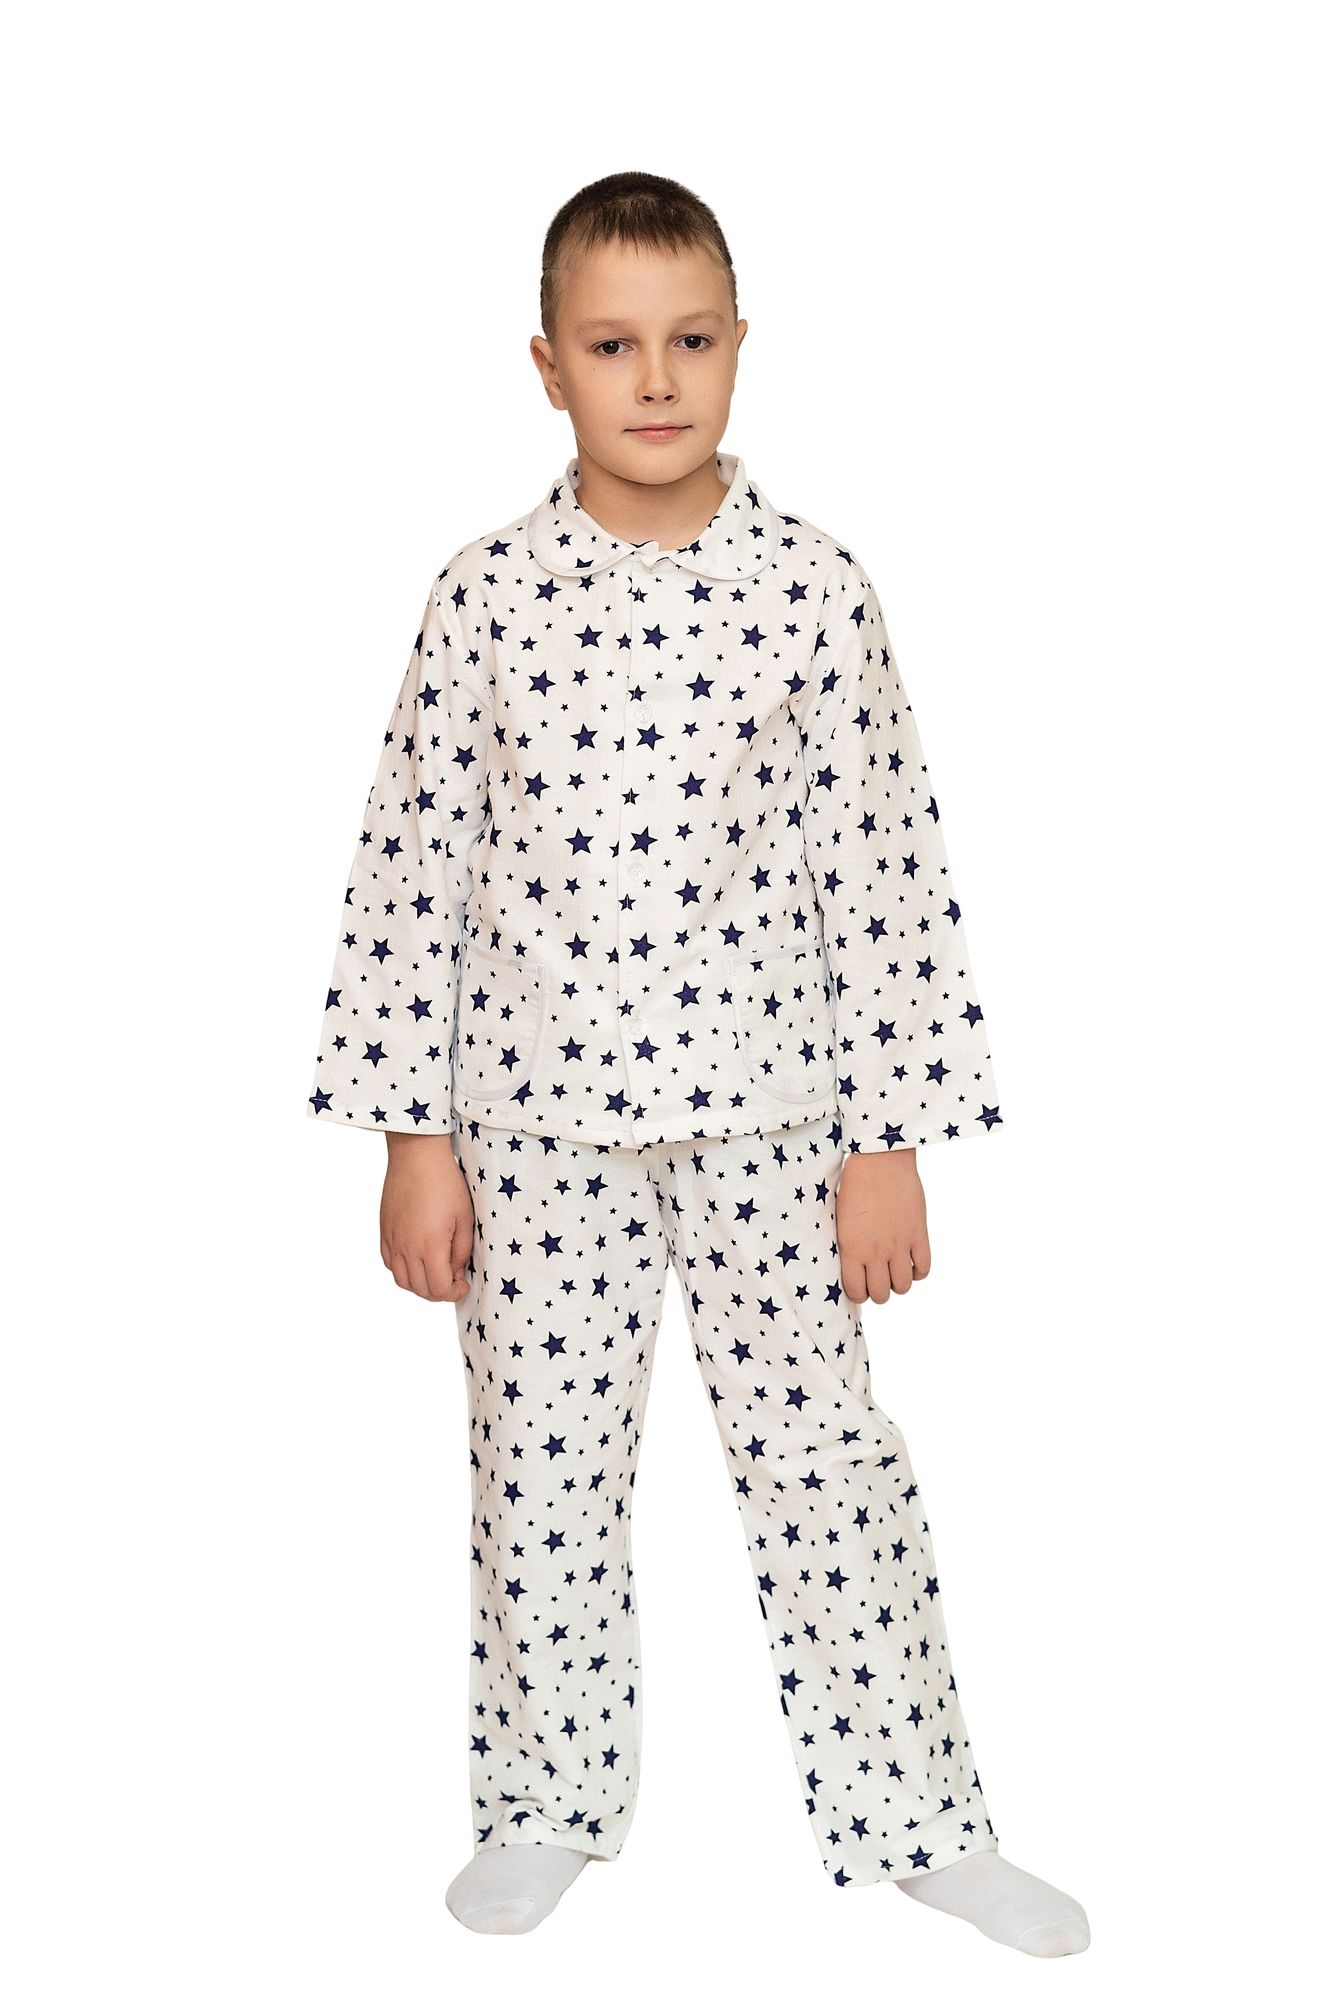 Пижама для мальчика, модель 307, фланель 26 размер, Звезды 18850-1